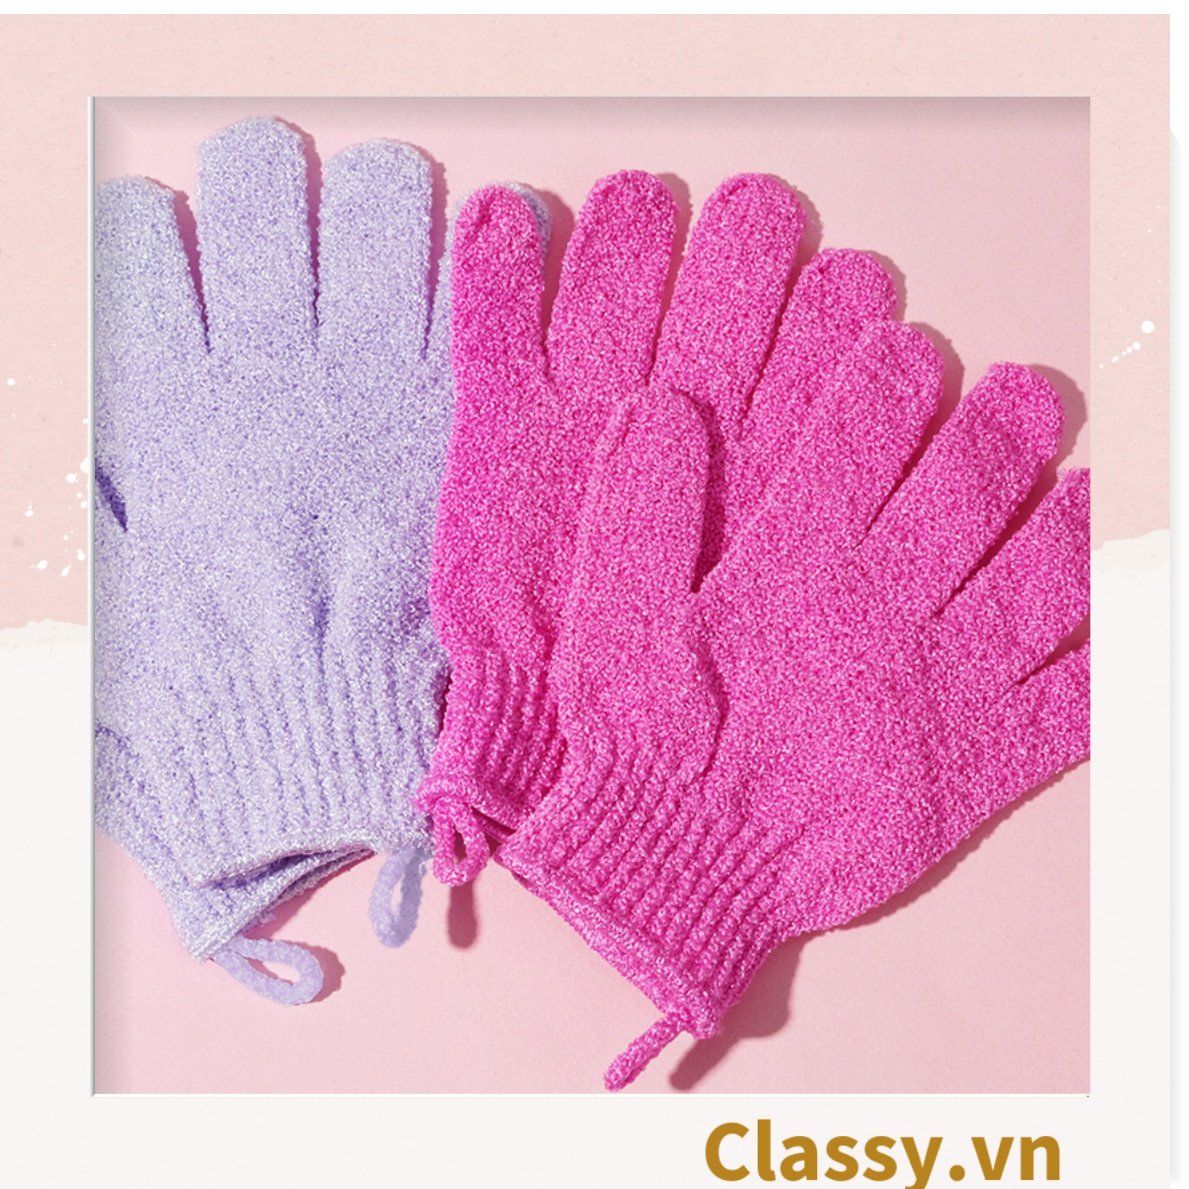 Cặp 2 chiếc găng tay tẩy tế bào chiếc (Túi 2 chiếc) màu hồng và trắng đa năng có thể massage và làm mịn da chi phí thấp PK1827